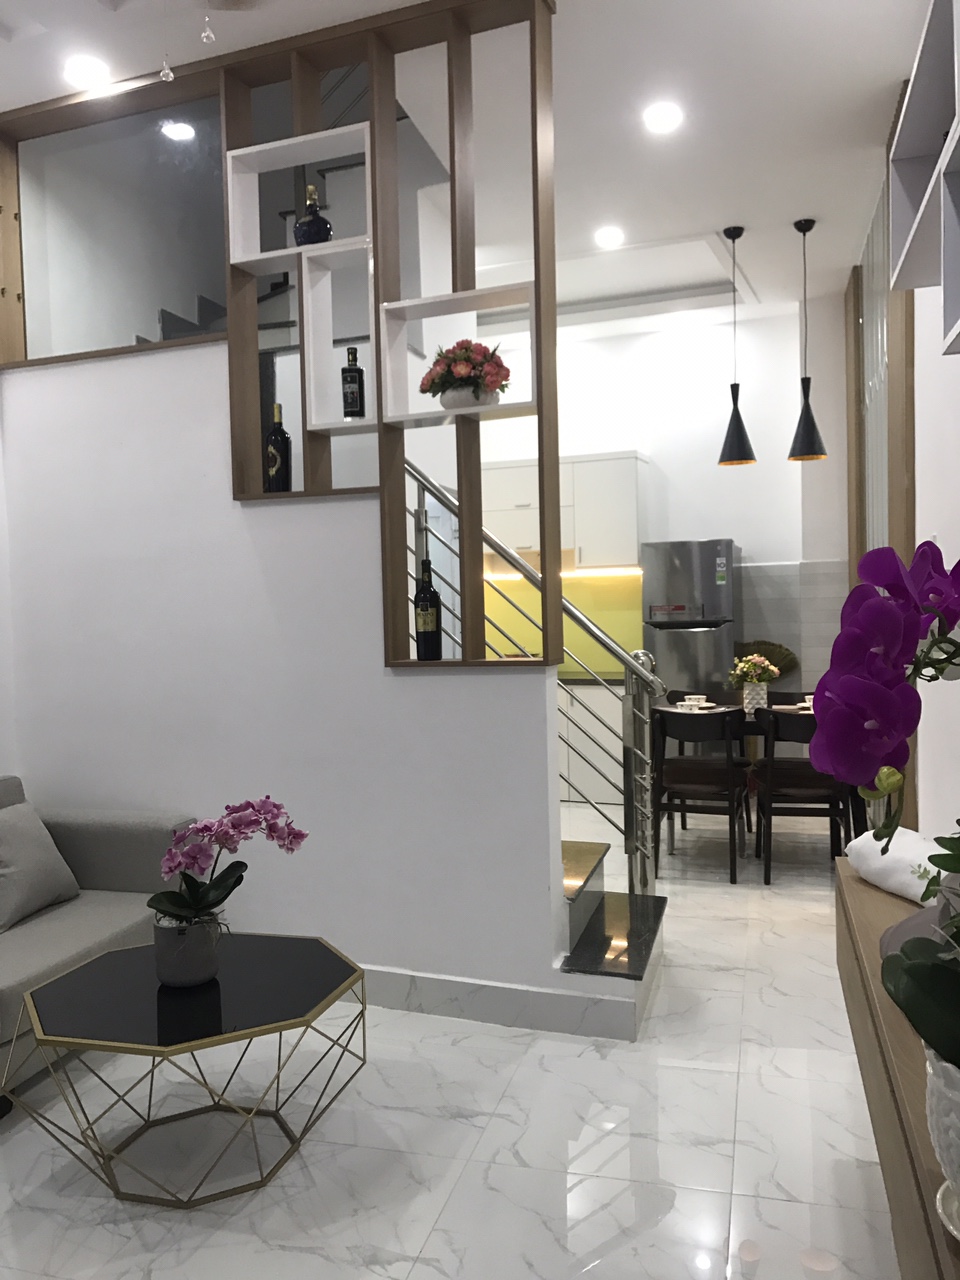 Cần bán nhà mới đường Tô Ngọc Vân – Hà Huy Giap 1 trệt 2 lầu